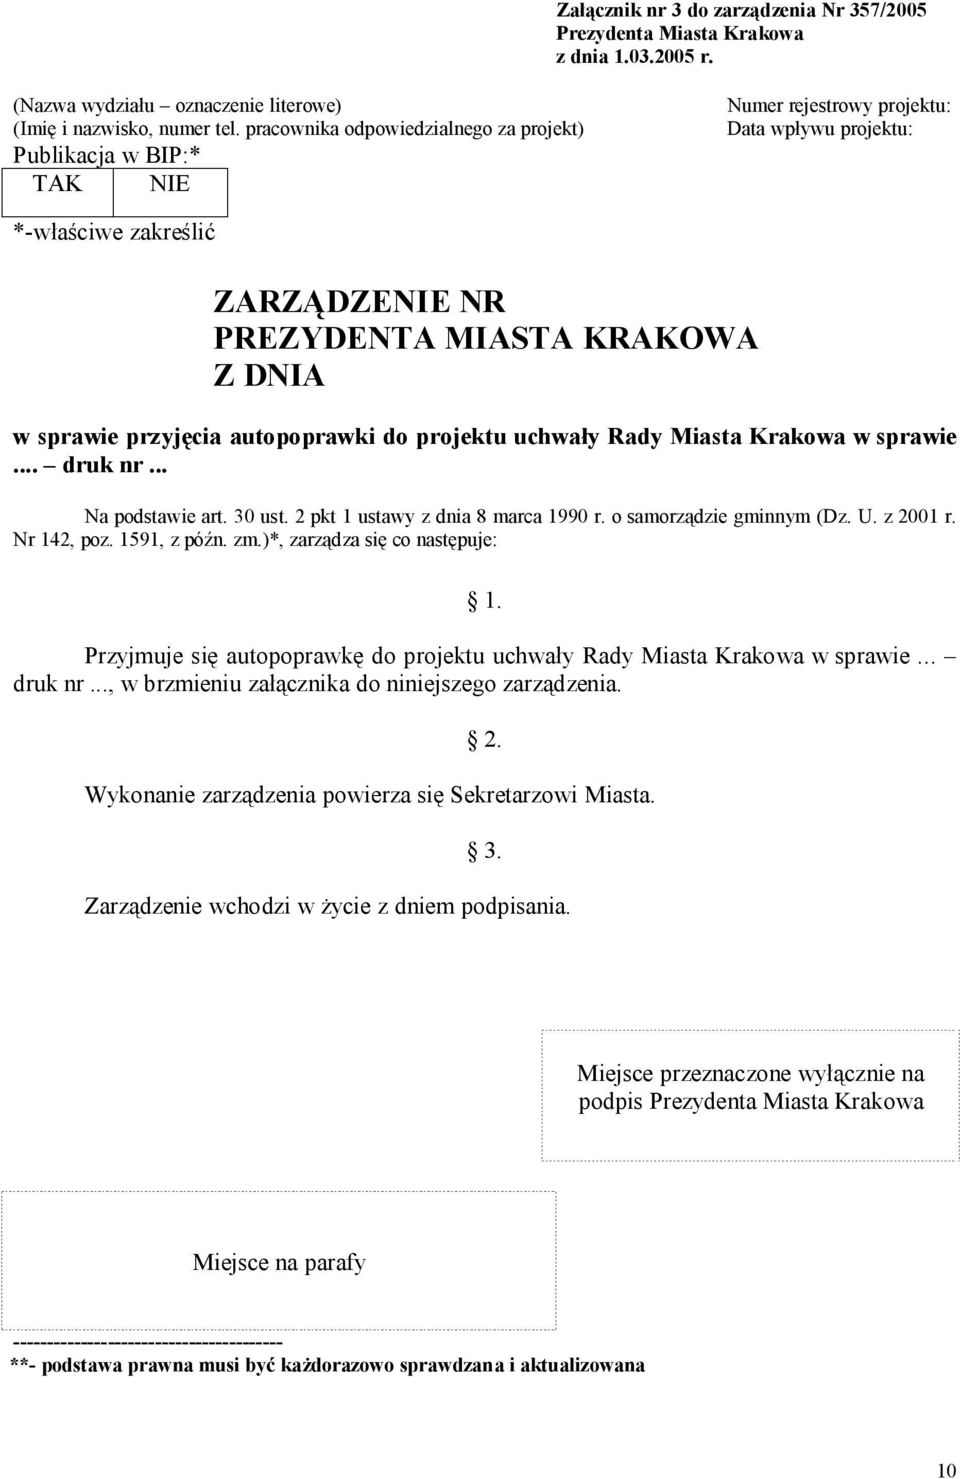 przyjęcia autopoprawki do projektu uchwały Rady Miasta Krakowa w sprawie... druk nr... Na podstawie art. 30 ust. 2 pkt 1 ustawy z dnia 8 marca 1990 r. o samorządzie gminnym (Dz. U. z 2001 r.